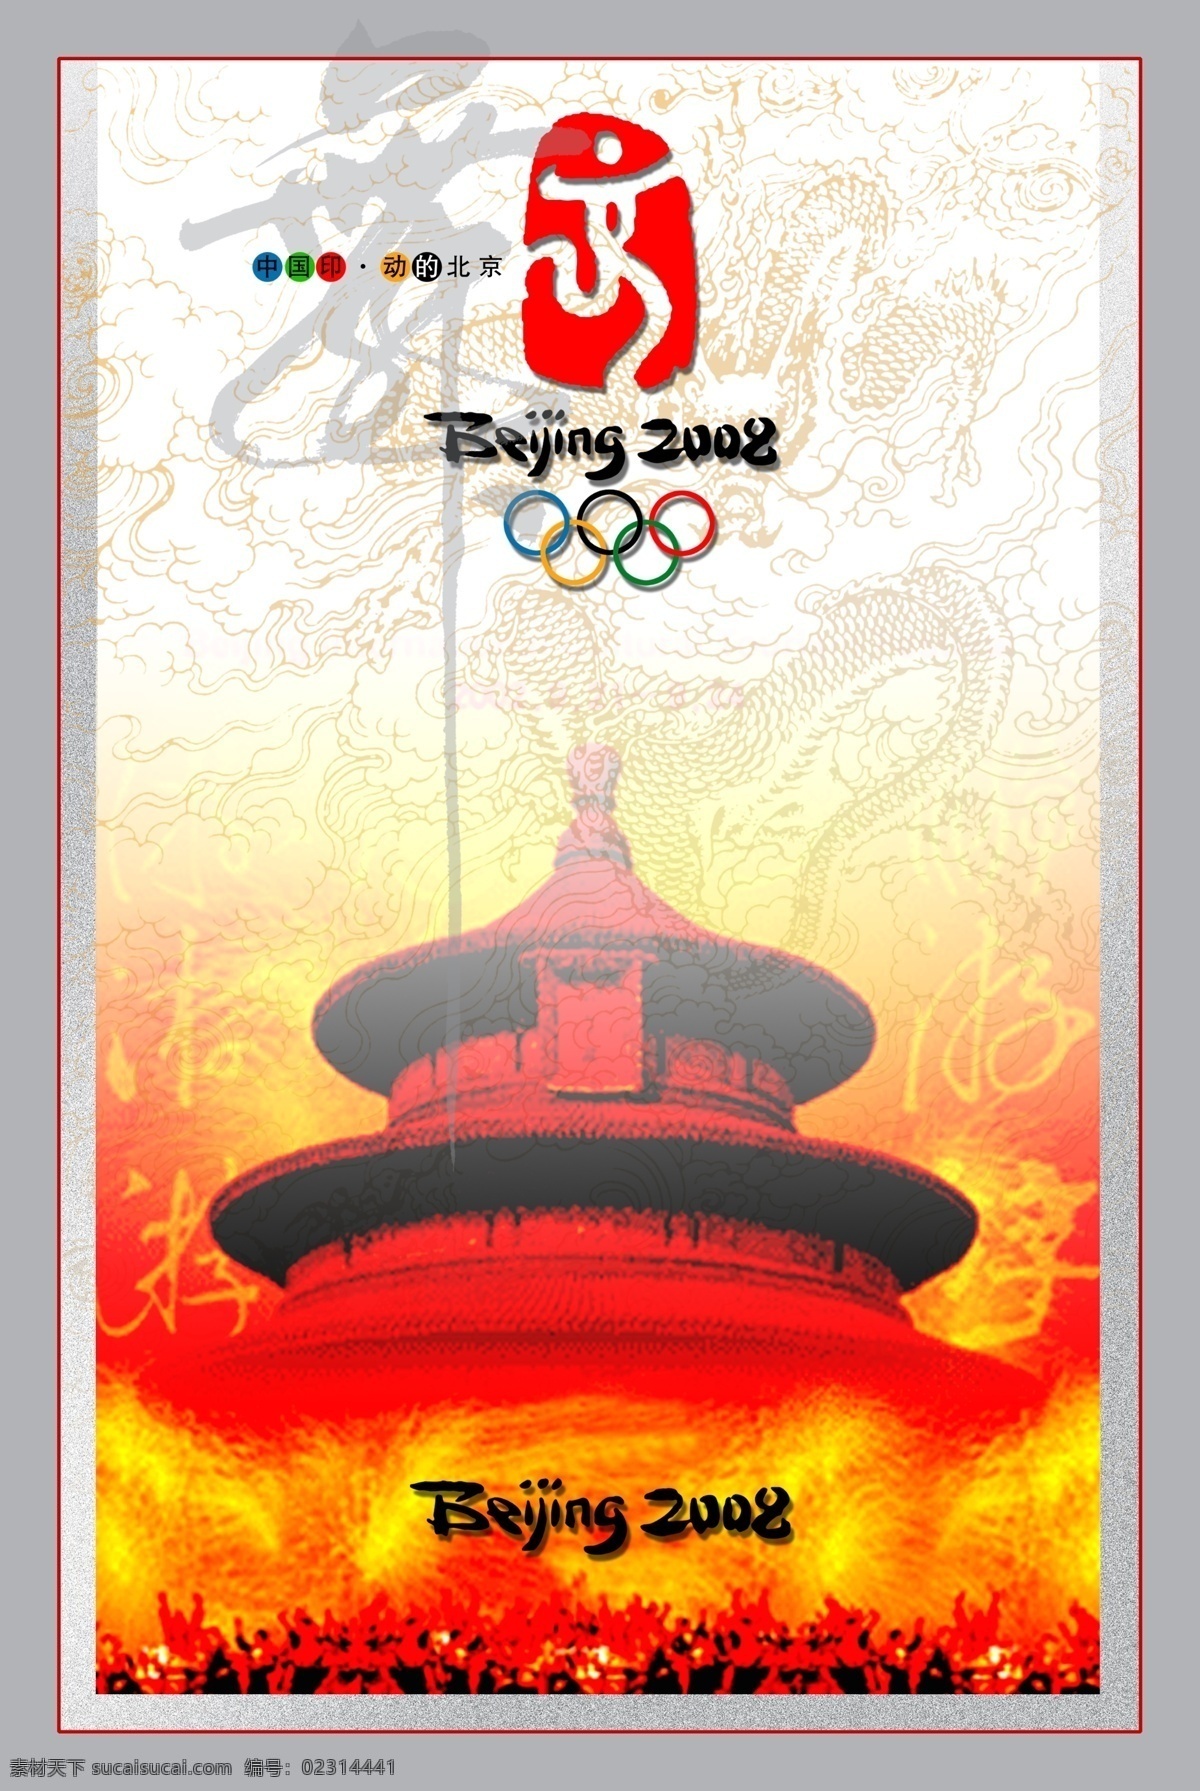 奥运北京 08奥运 北京 天坛 奥运标识 奥运logo 龙图 中国印 共享psd 分层